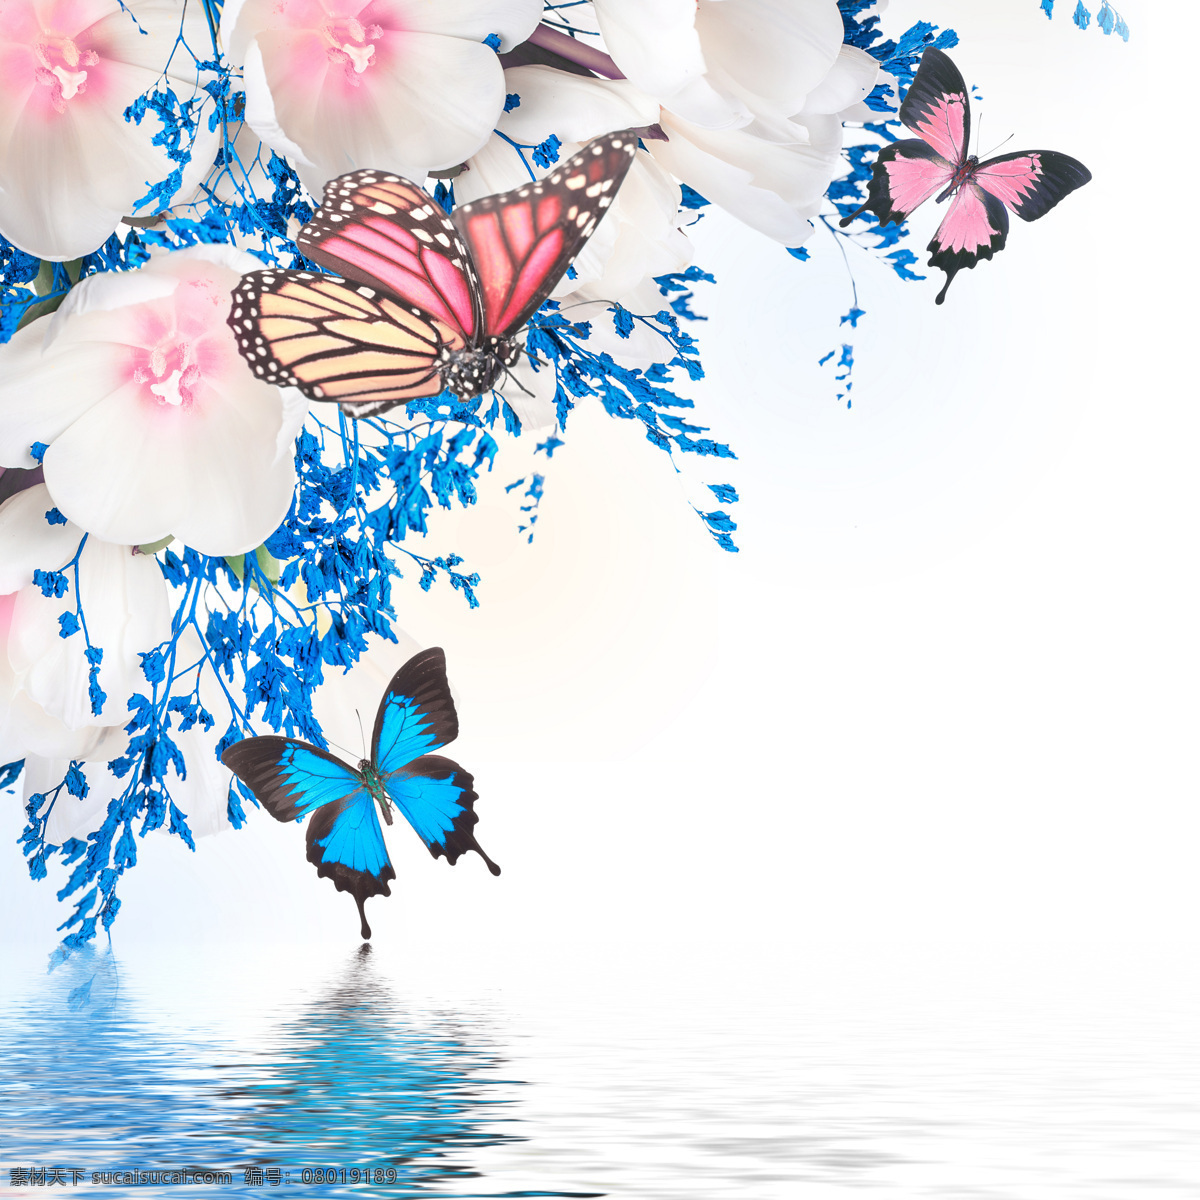 美丽 画面 花朵 蝴蝶 春天 背景 春季 鲜花 娇艳 水面 花草树木 生物世界